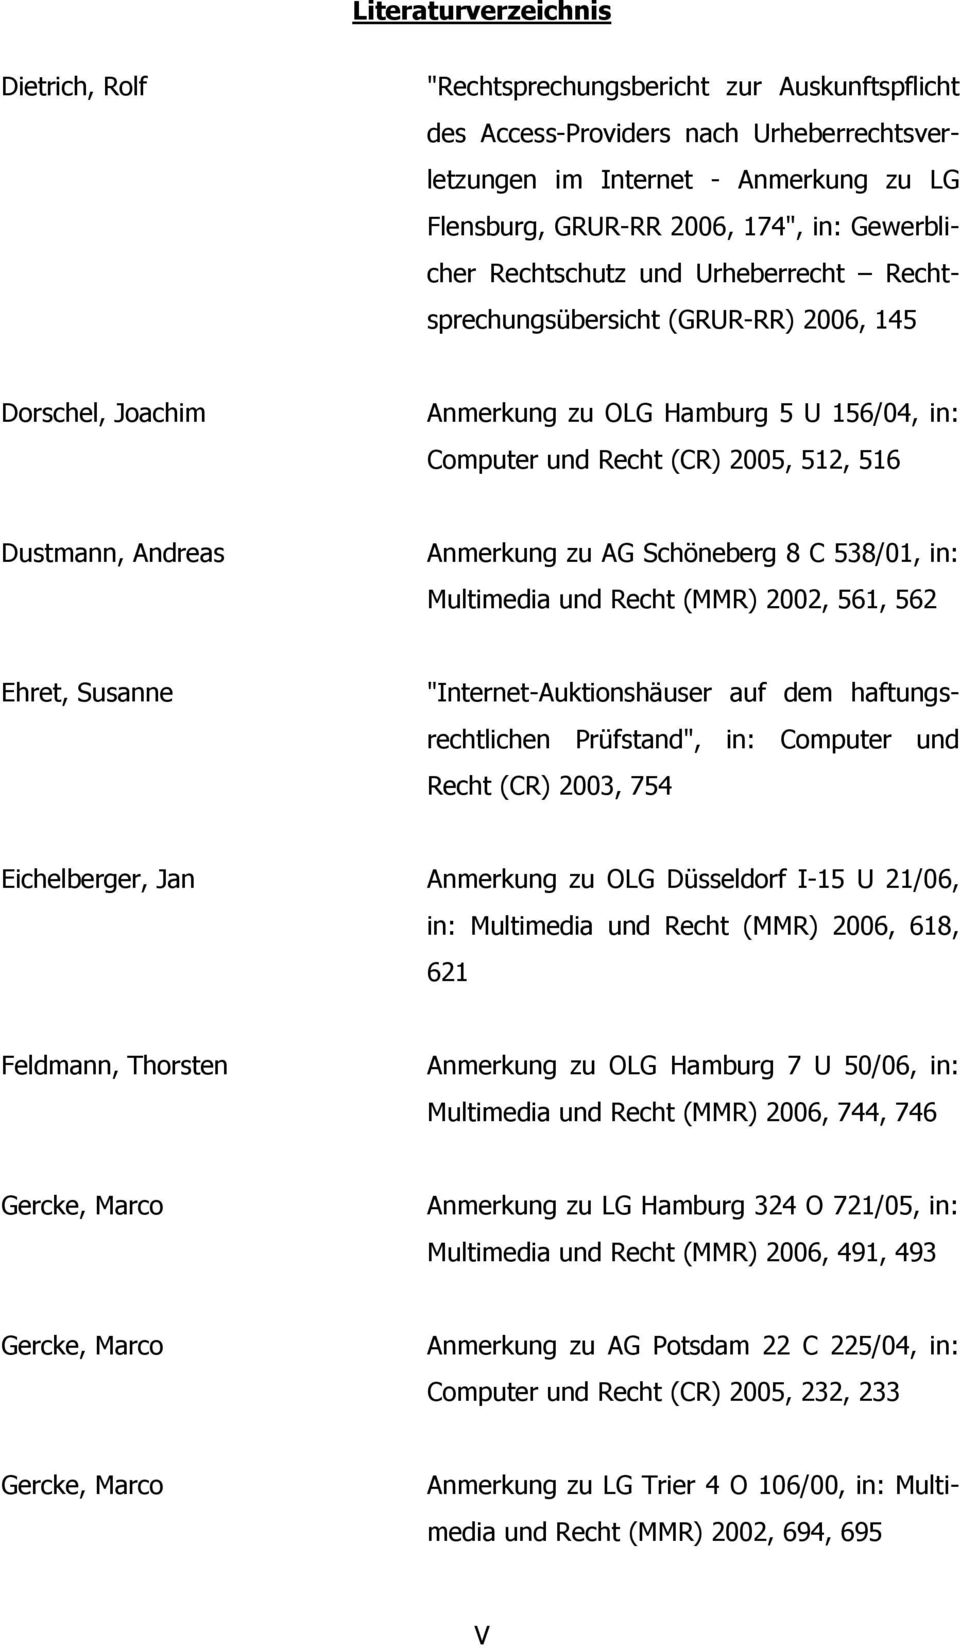 Andreas Anmerkung zu AG Schöneberg 8 C 538/01, in: Multimedia und Recht (MMR) 2002, 561, 562 Ehret, Susanne "Internet-Auktionshäuser auf dem haftungsrechtlichen Prüfstand", in: Computer und Recht